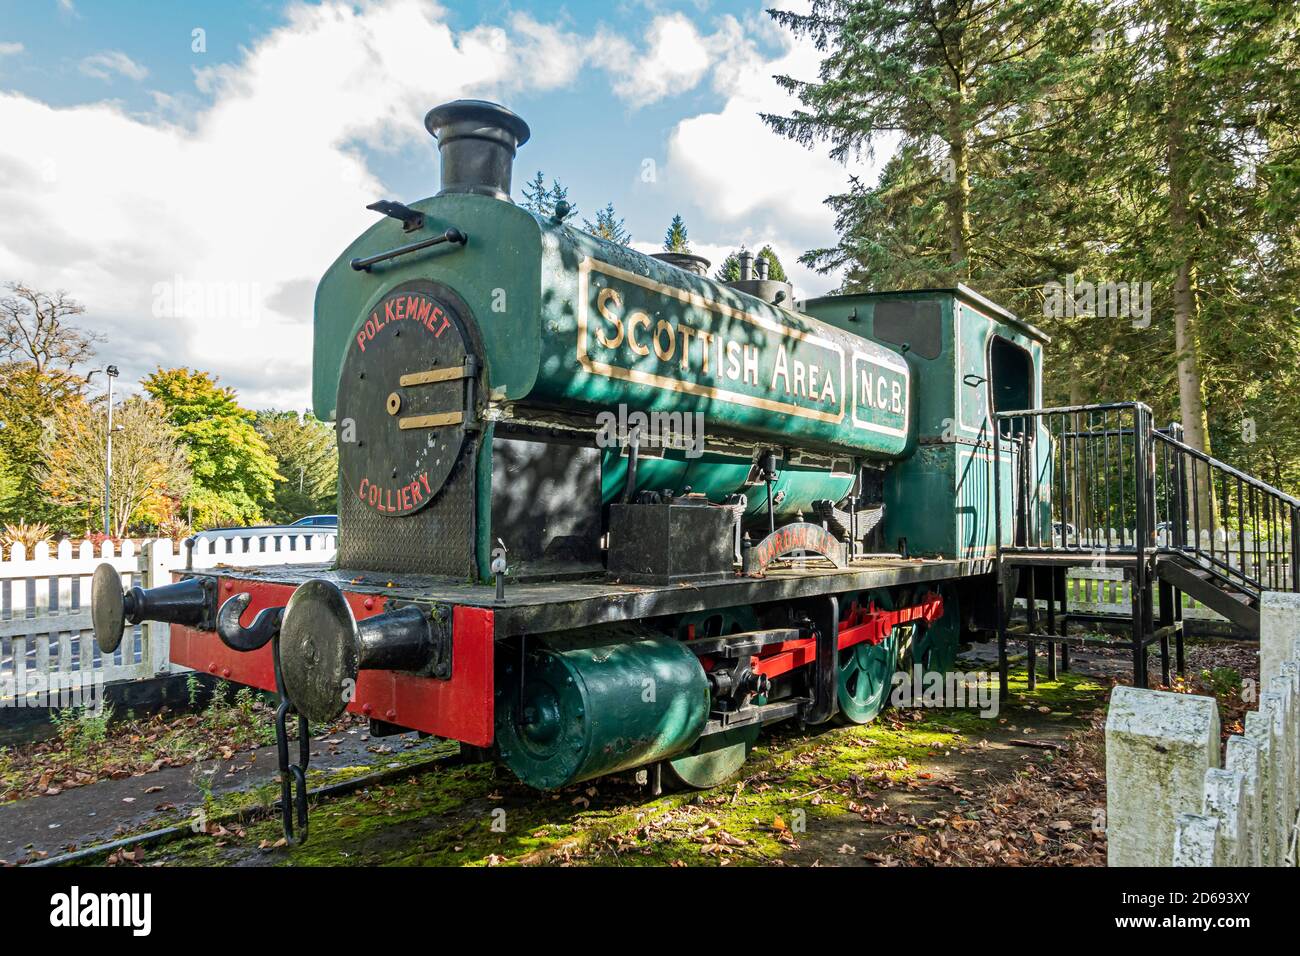 Ancien moteur à vapeur de colliery Polkemmet n° 8 Dardanelles exposé à Polkemmet Country Park près de Whitburn West Lothian Scotland UK Banque D'Images